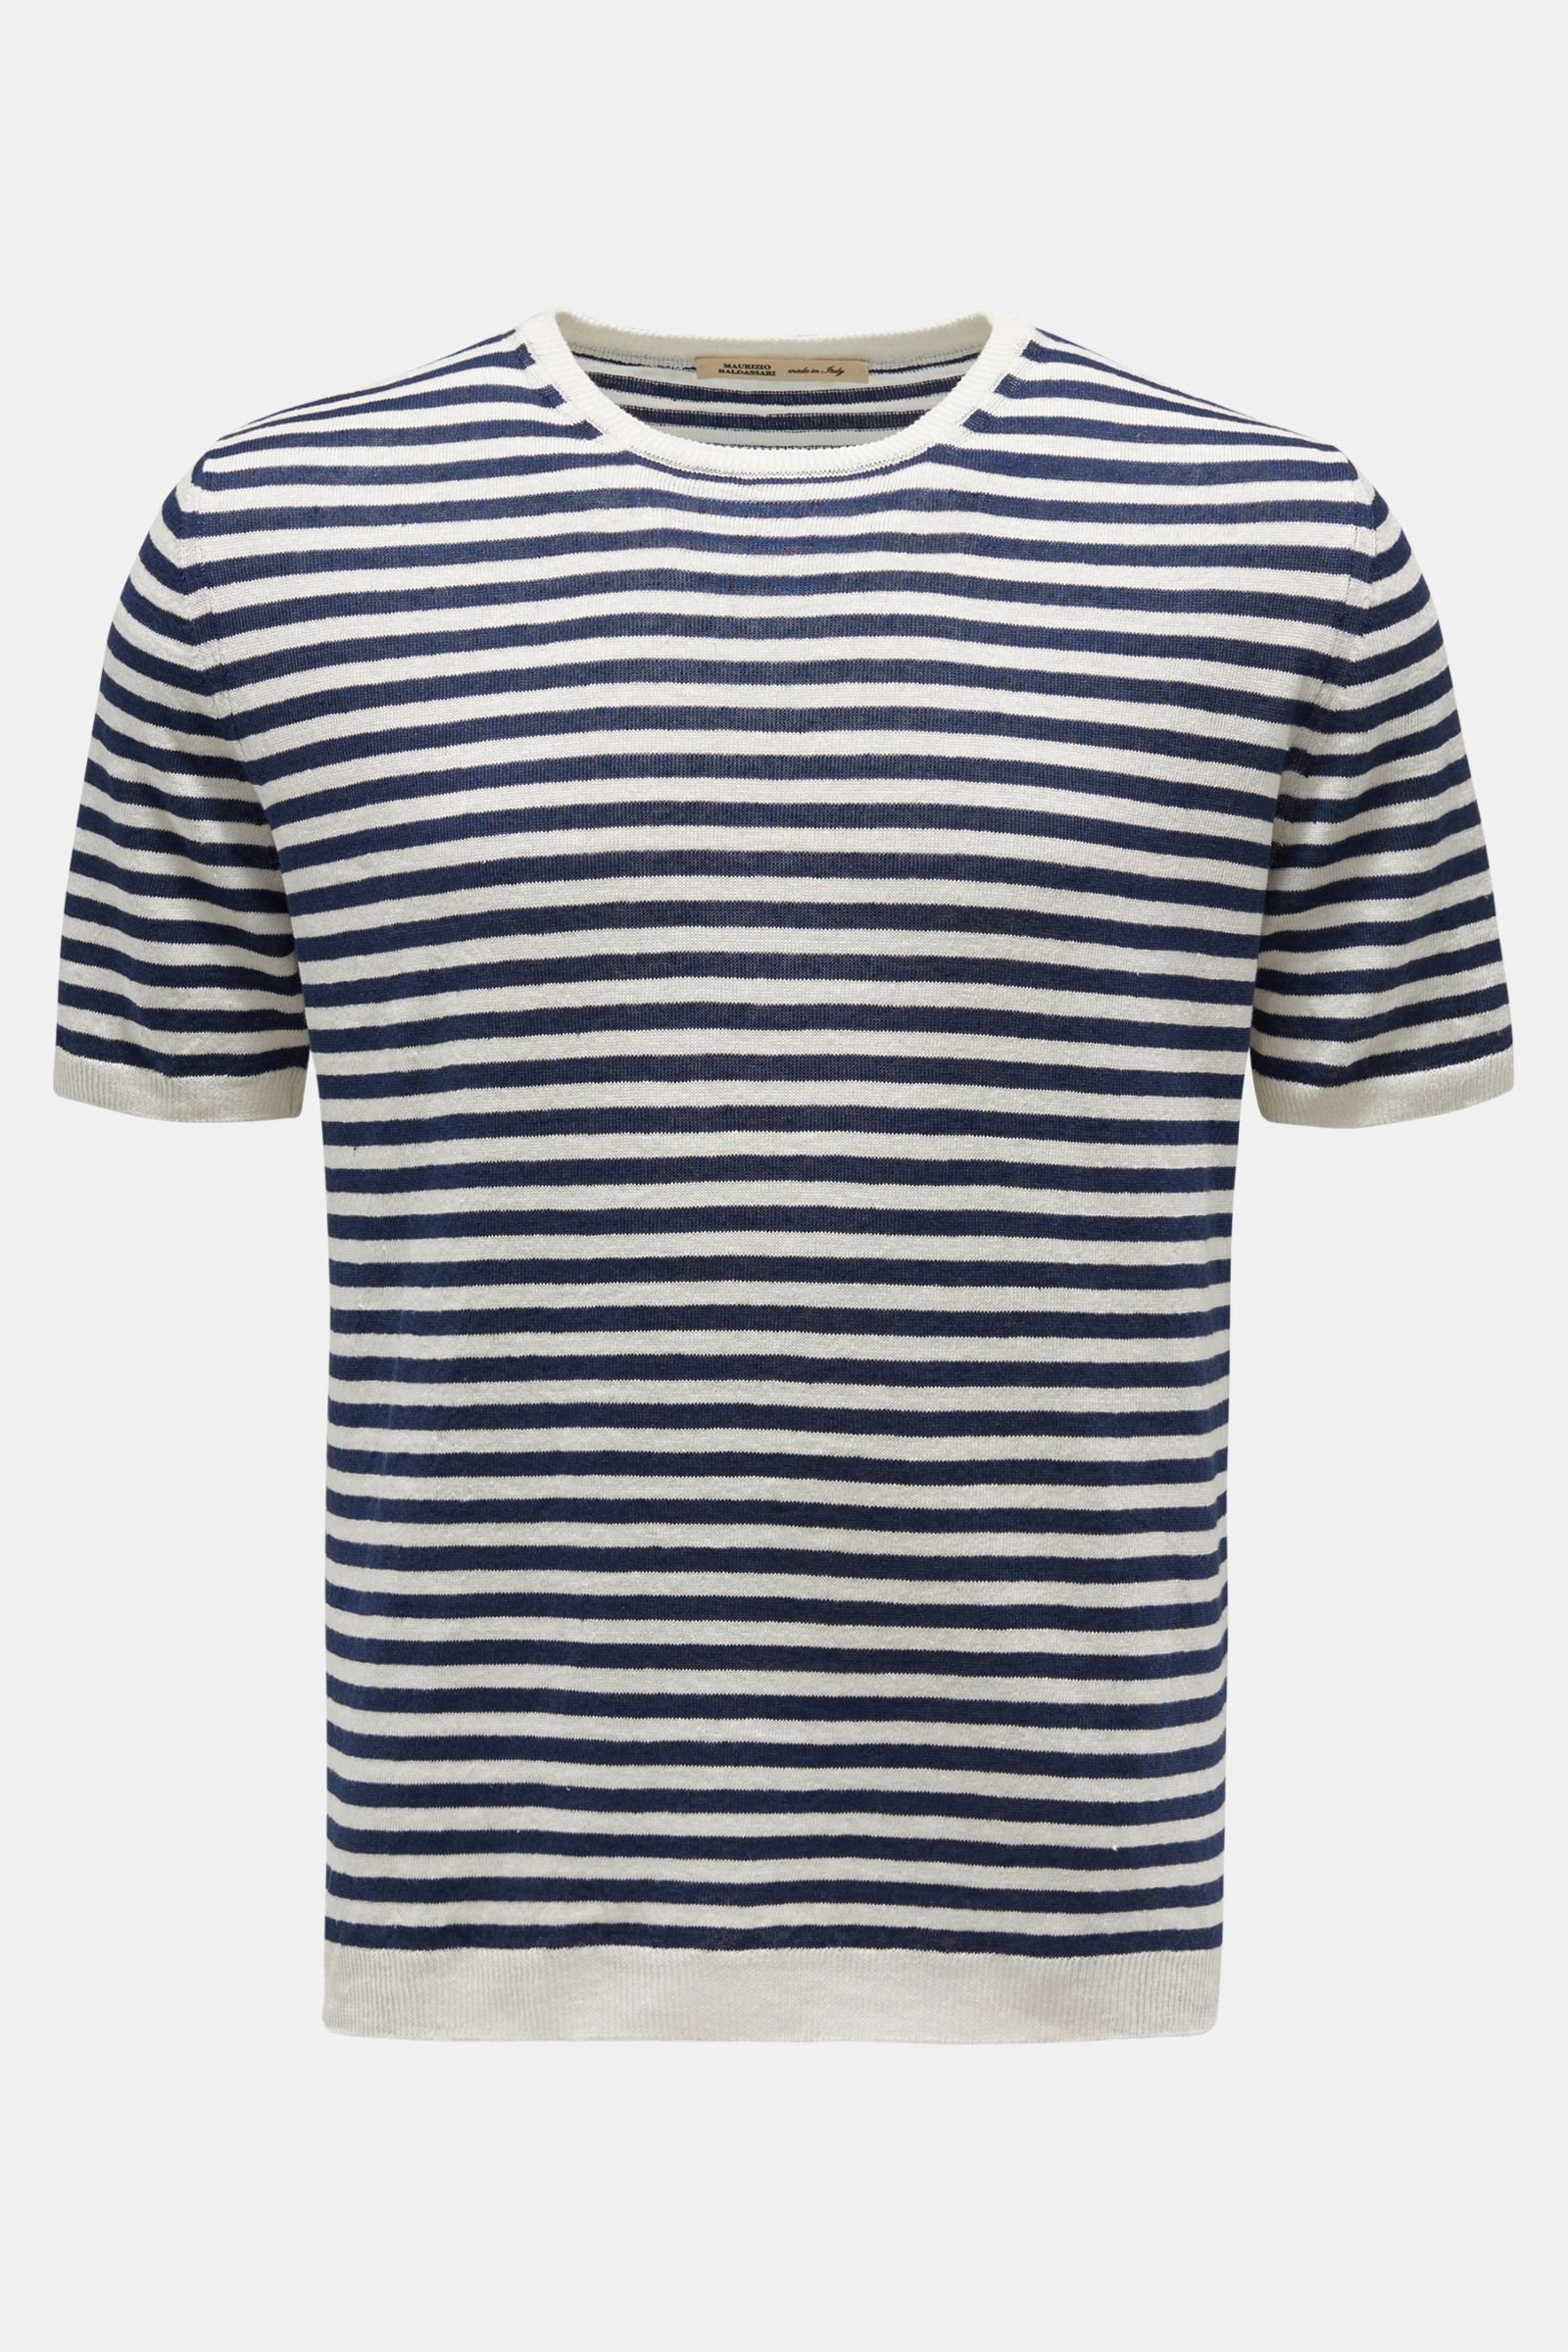 Linen short-sleeved jumper navy/cream striped